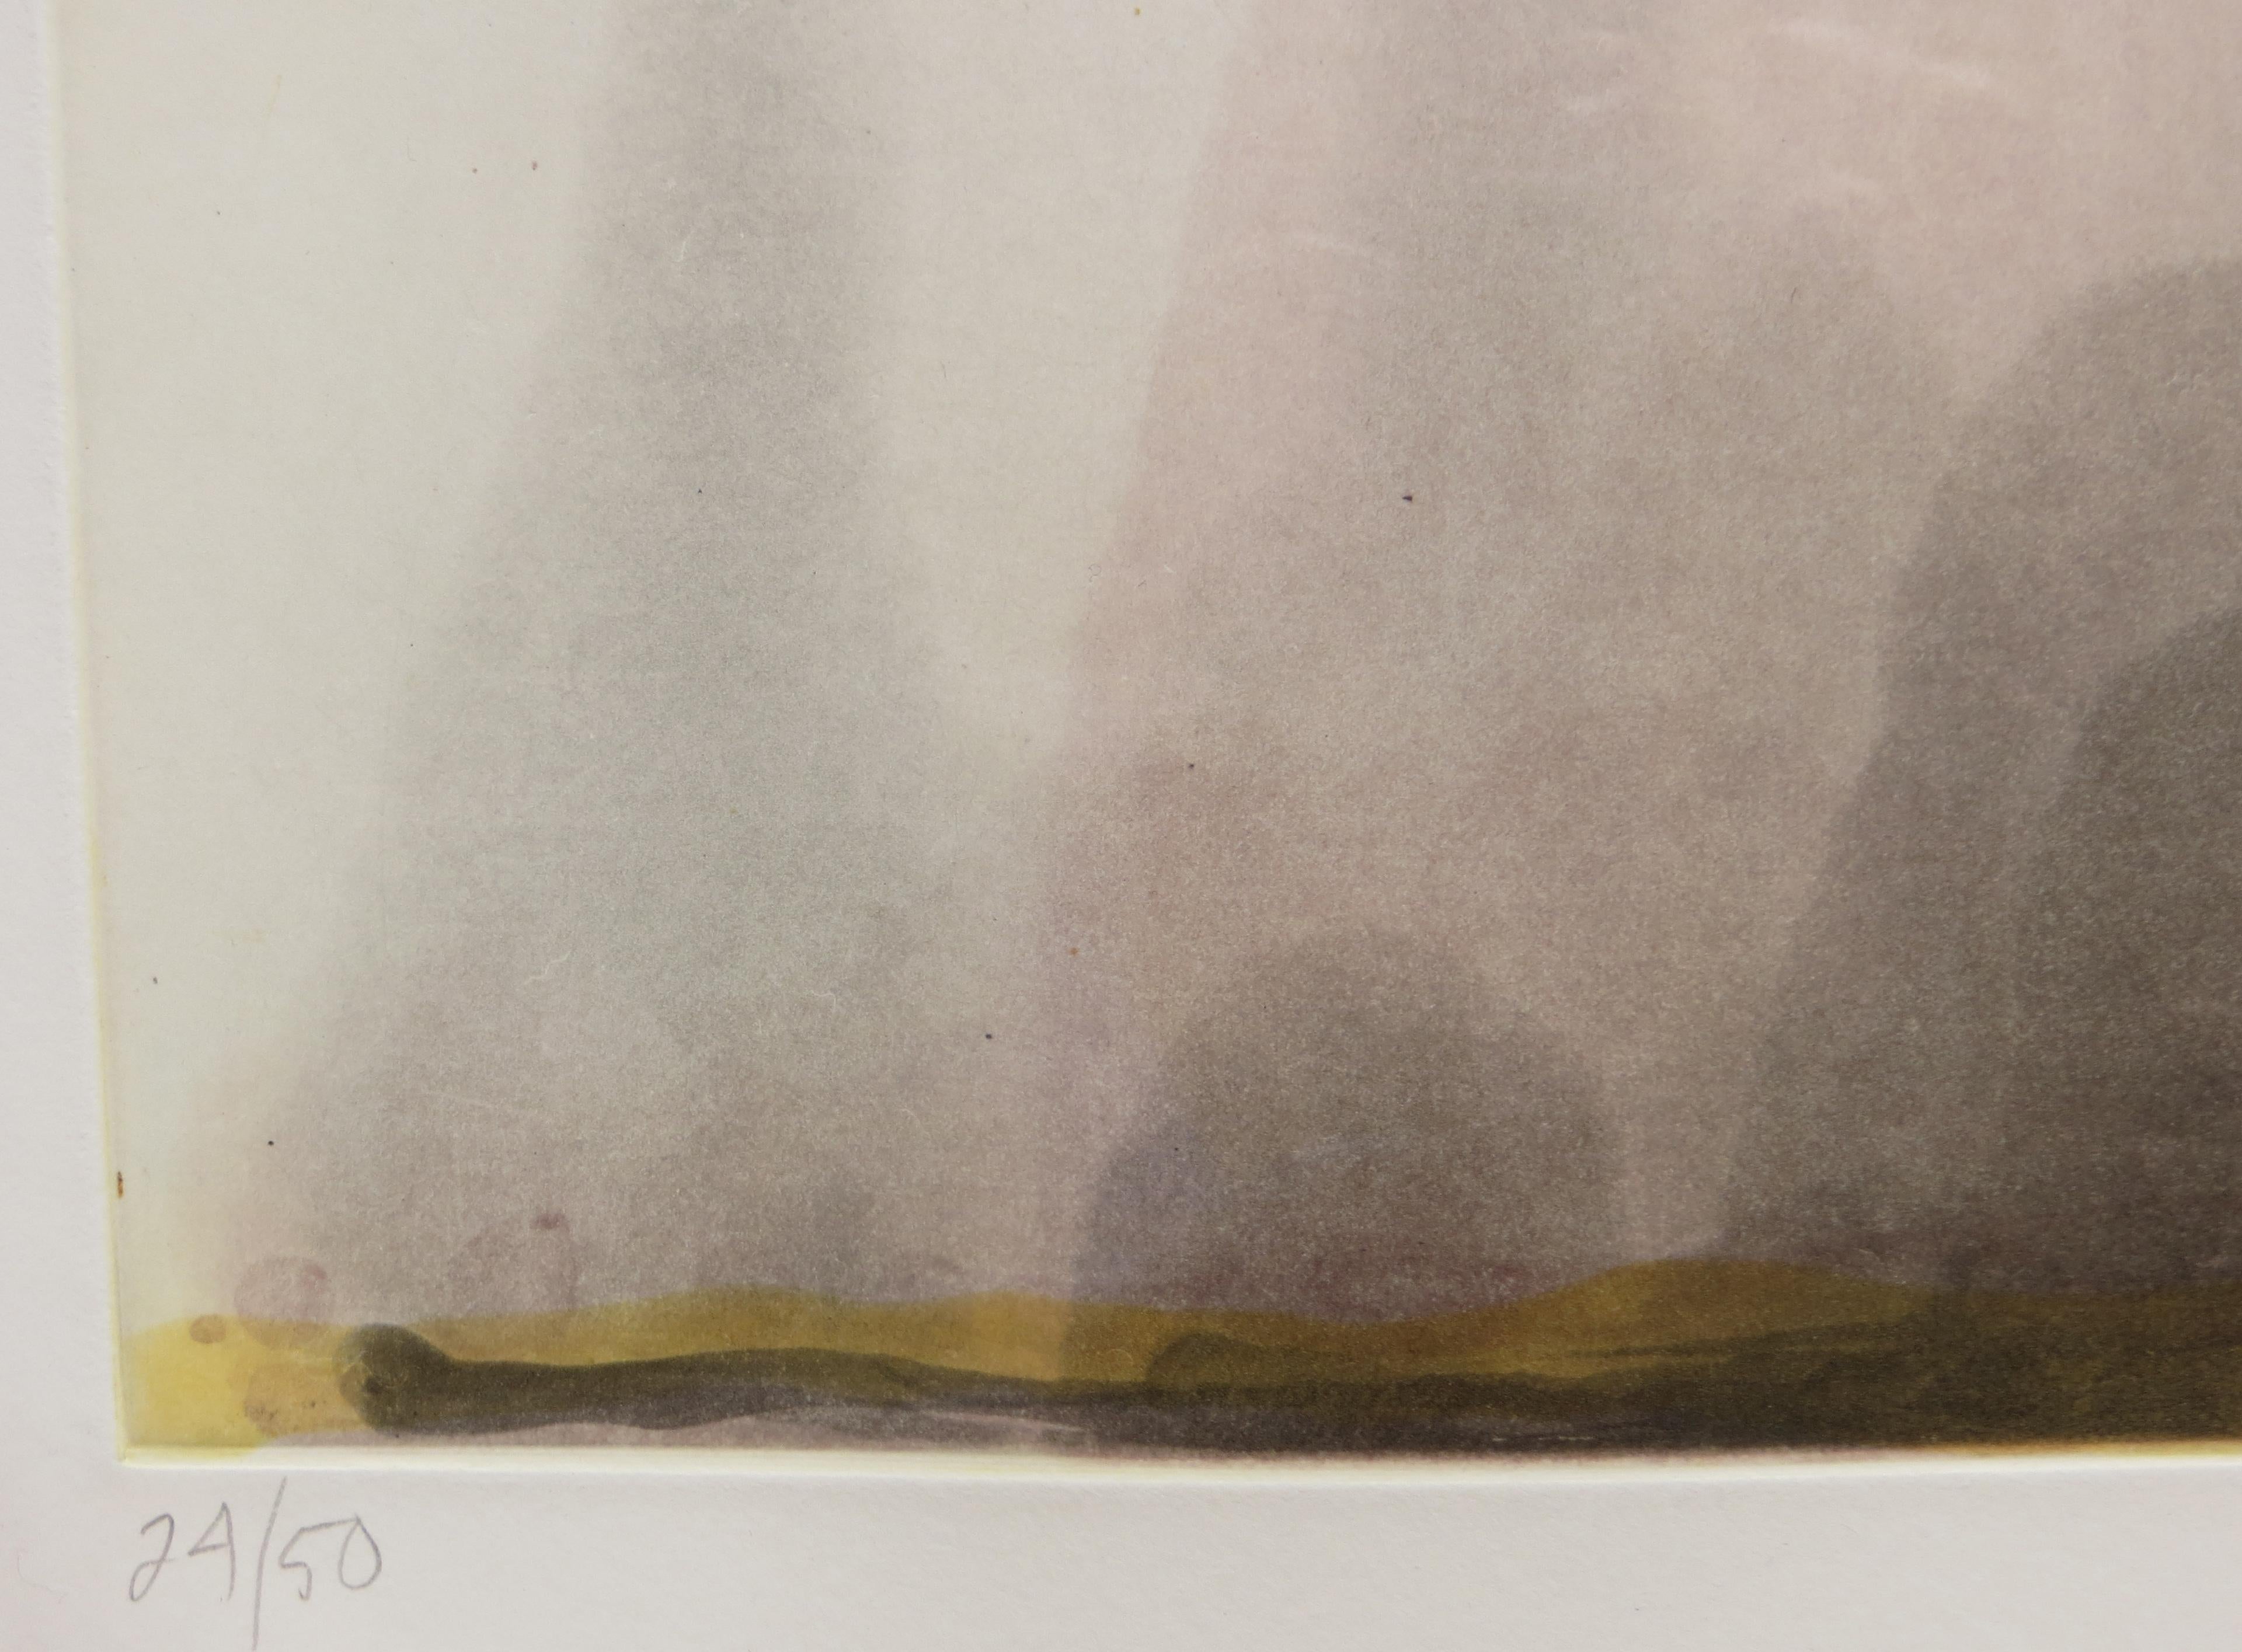 Artiste : Tom Marioni - Américain (1937- )
Titre : Paysage de processus 1998
Année : 1998
Médium : Aquatinte en couleur avec crachat
Taille de l'image : 15,75 x 10 pouces. 
Format du papier : 20 x 16 pouces 
Taille de l'encadrement : 21.75 x 17.75